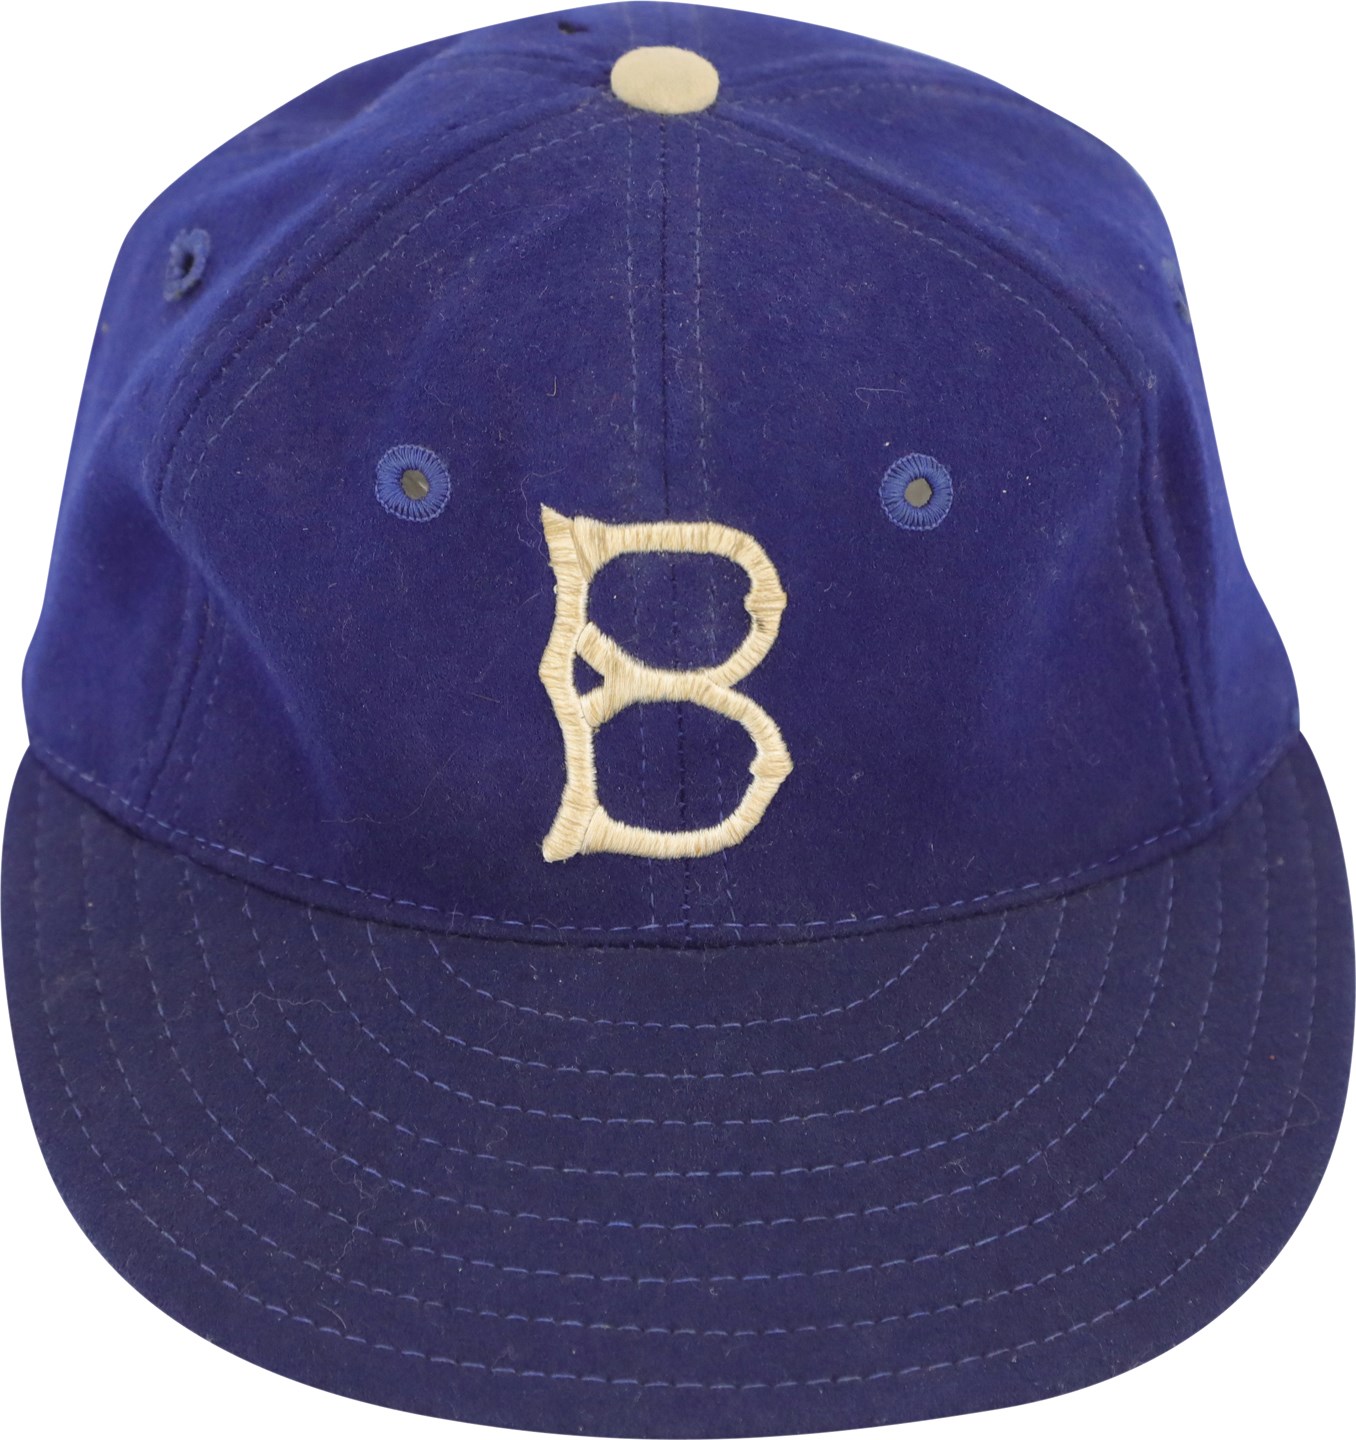 Baseball Equipment - Circa 1950 Pee Wee Reese Brooklyn Dodgers Game Worn Hat (Dobbins LOA)